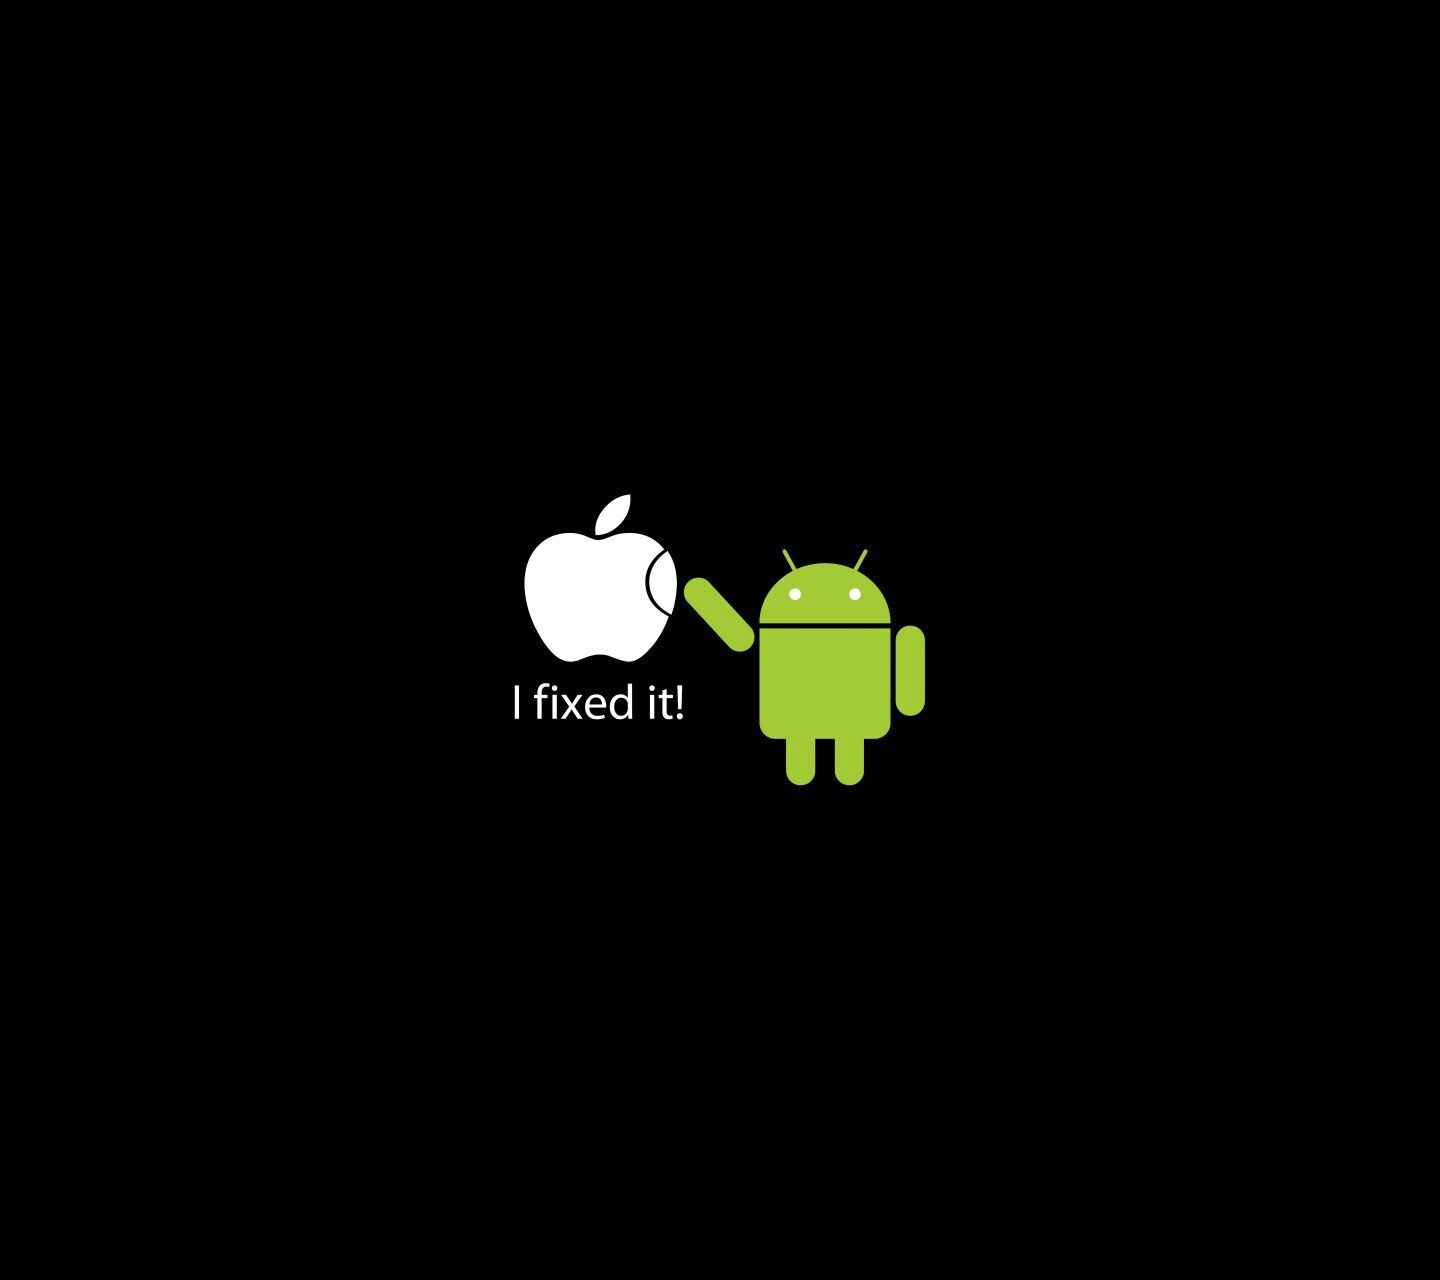 Андроид ест яблоко